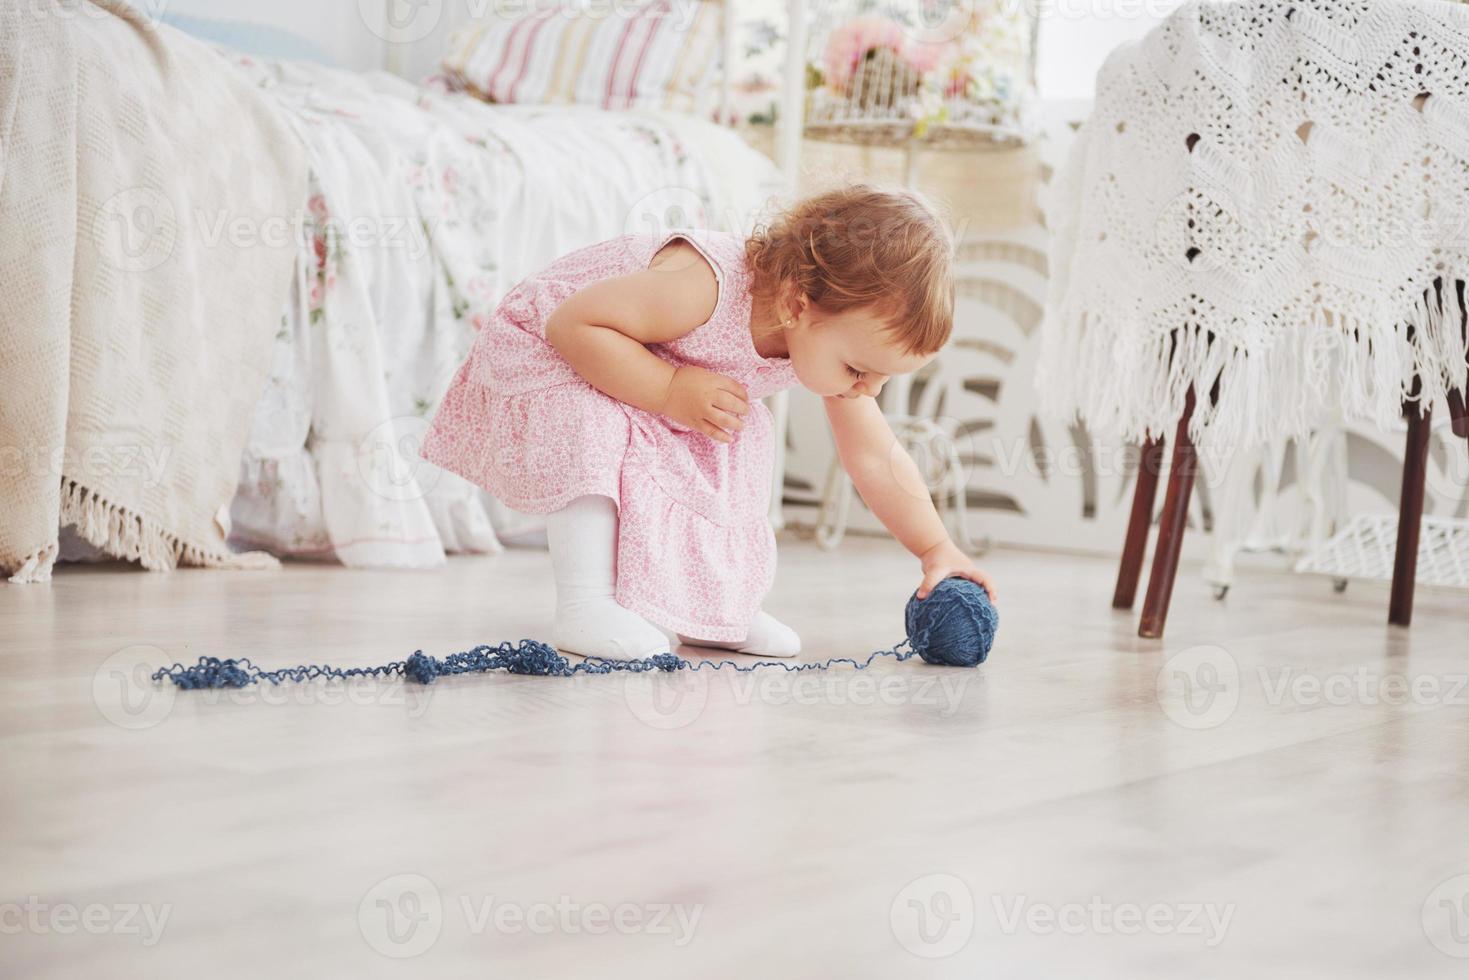 Kindheit Konzept. Babymädchen im niedlichen Kleiderspiel mit farbigem Faden. weißes Vintage-Kinderzimmer foto